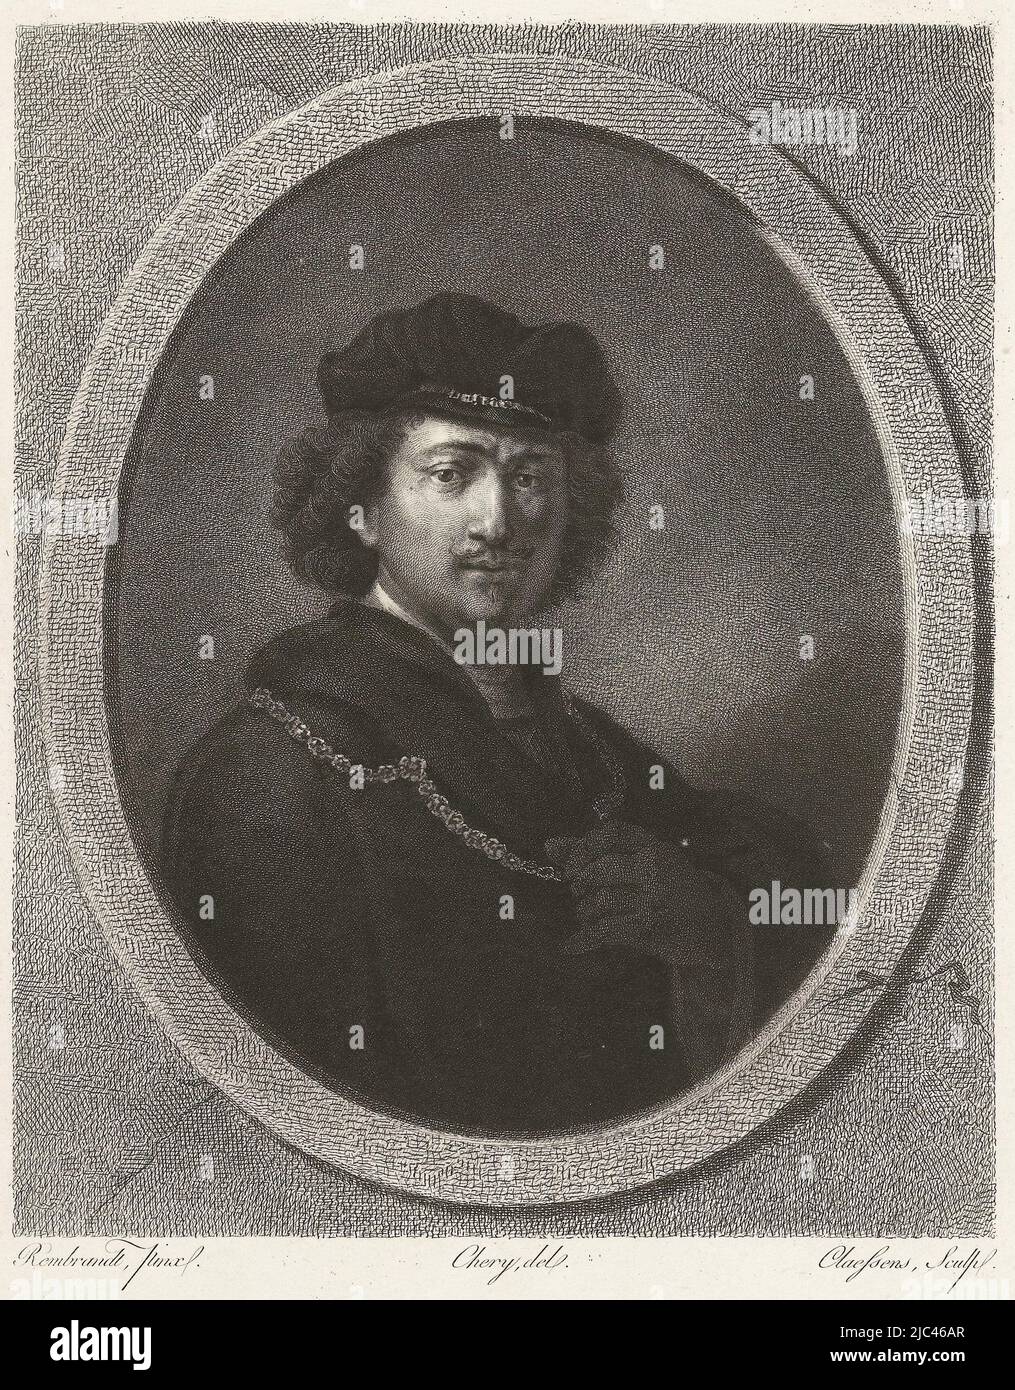 Retrato de un hombre que lleva un sombrero de terciopelo y lleva una cadena. Debajo del retrato: Retrato No. II., Hombre con sombrero y collar, impresor: Lambertus Antonius Claessens, (mencionado en el objeto), después: Rembrandt van Rijn, (mencionado en el objeto), dibujante intermediario: Chery, (mencionado en el objeto), París, c. 1829 - c. 1834, papel, grabado, grabado, al. 428 mm x al. 310 mm Foto de stock